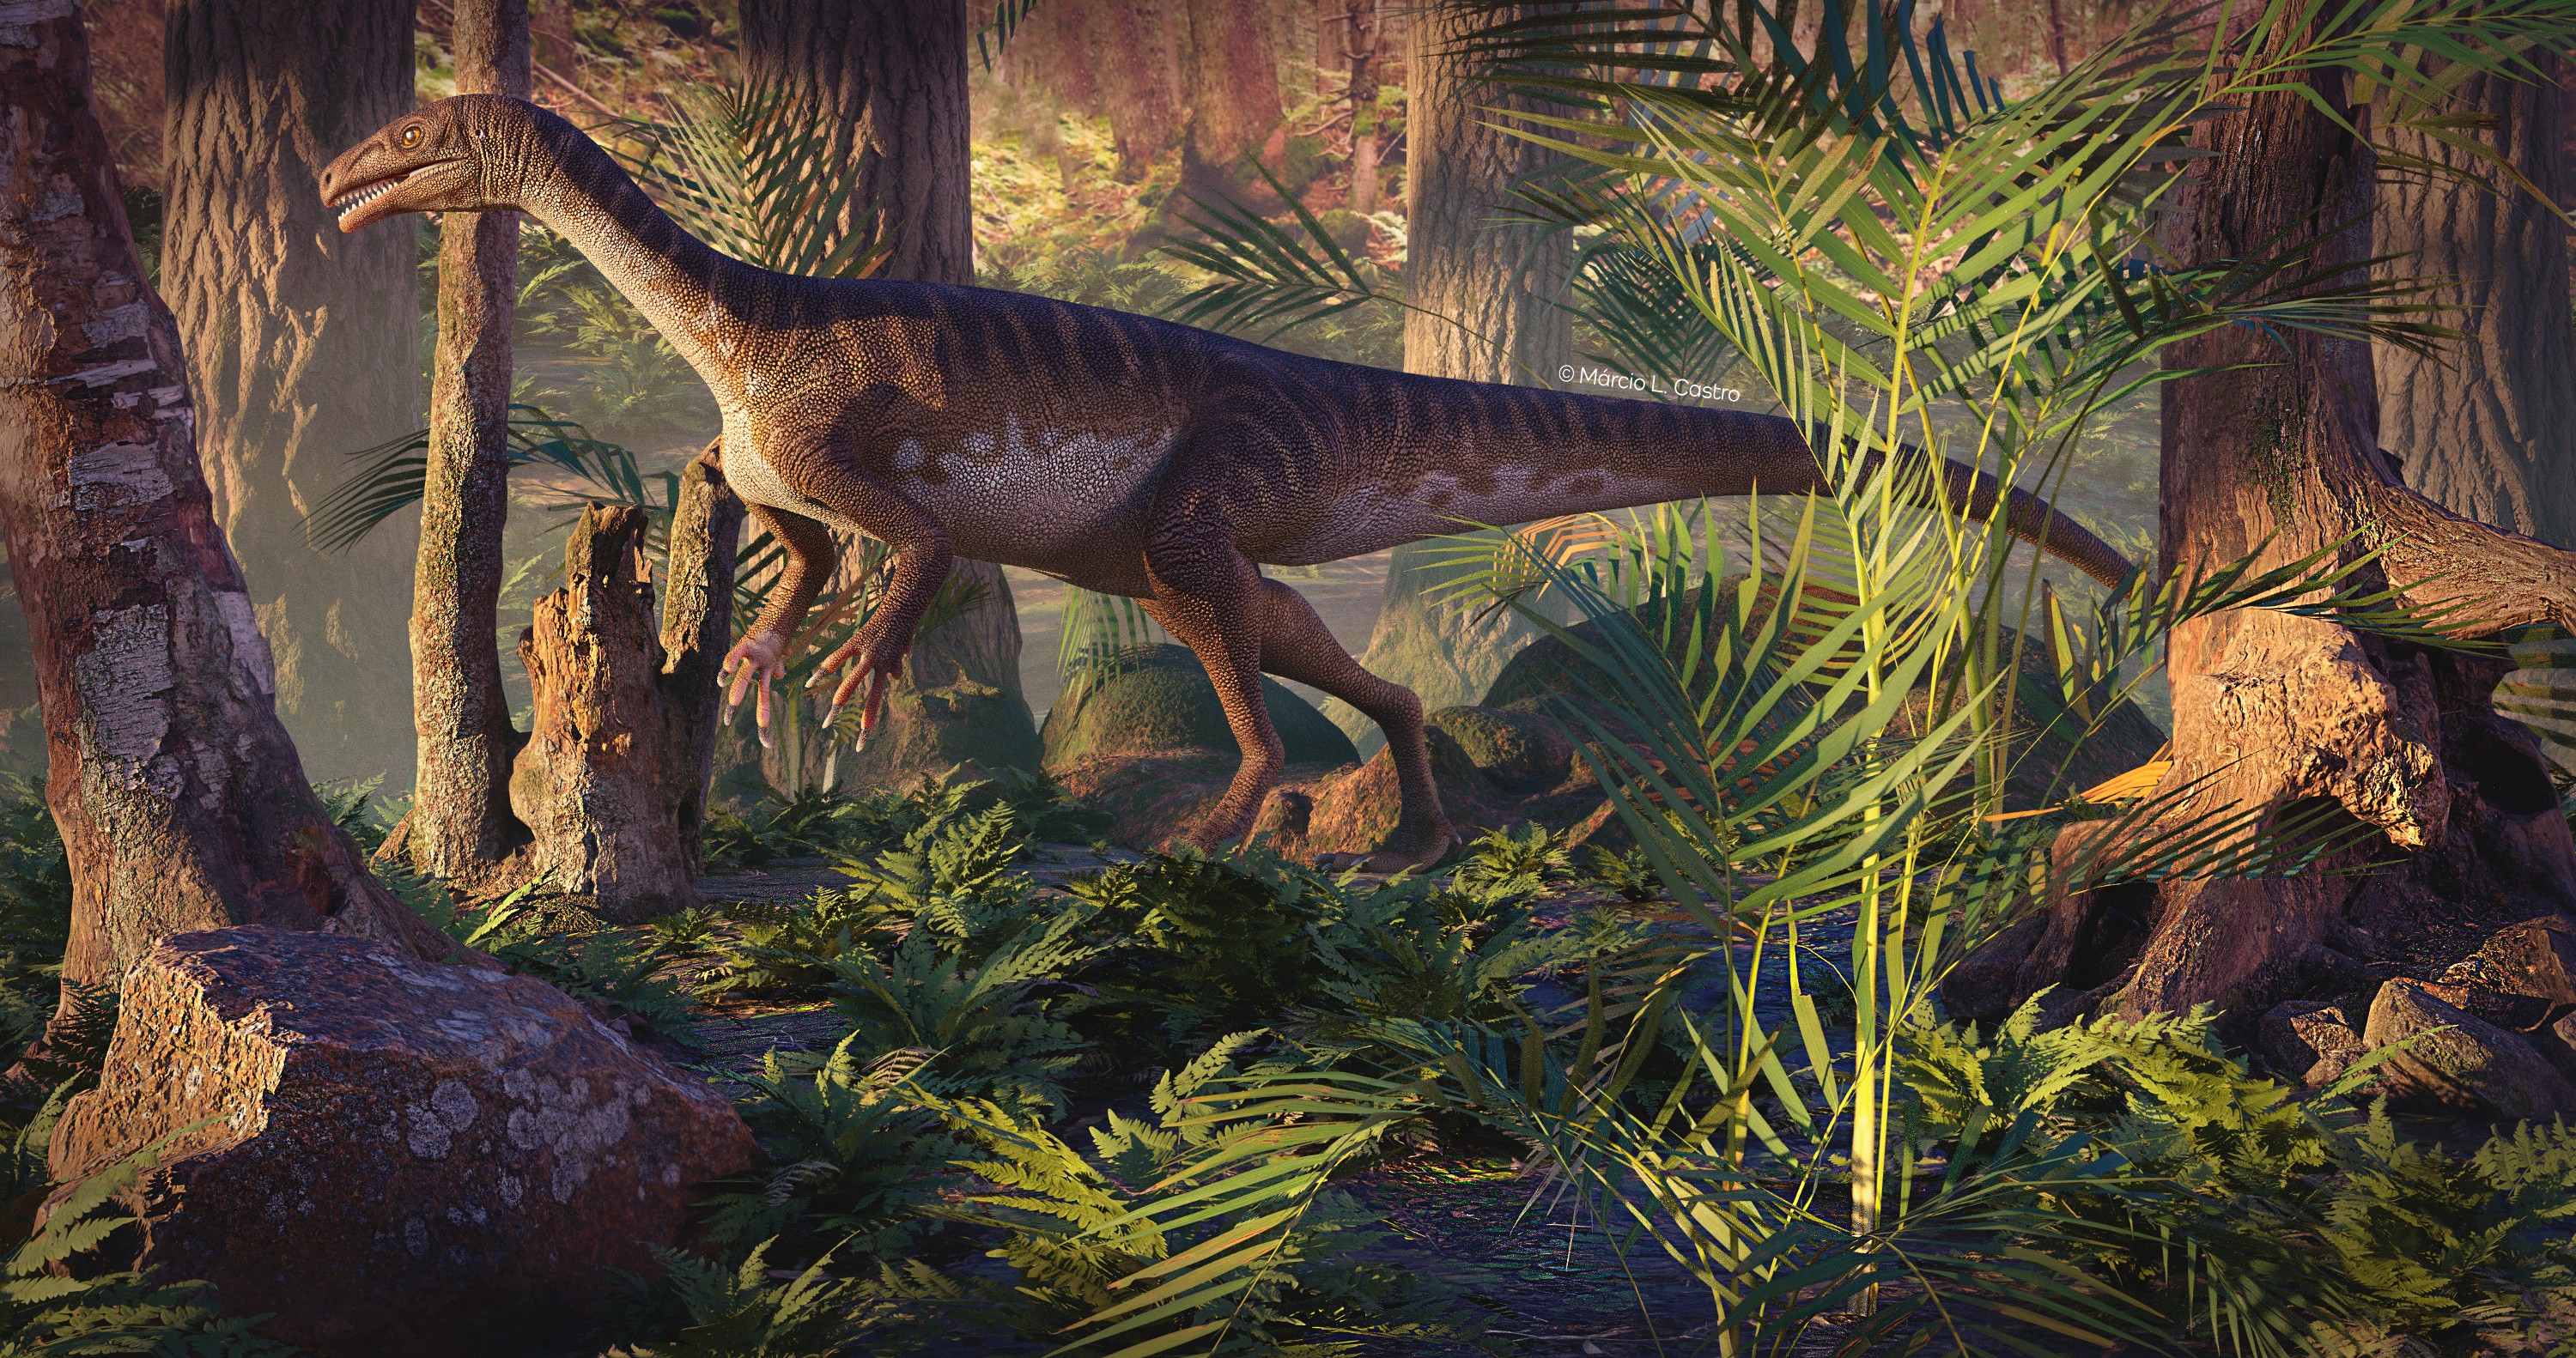 Ilustração do dinossauro de 2,2 metros de comprimento descoberto em Agudo (RS) (Foto: Márcio L. Castro)